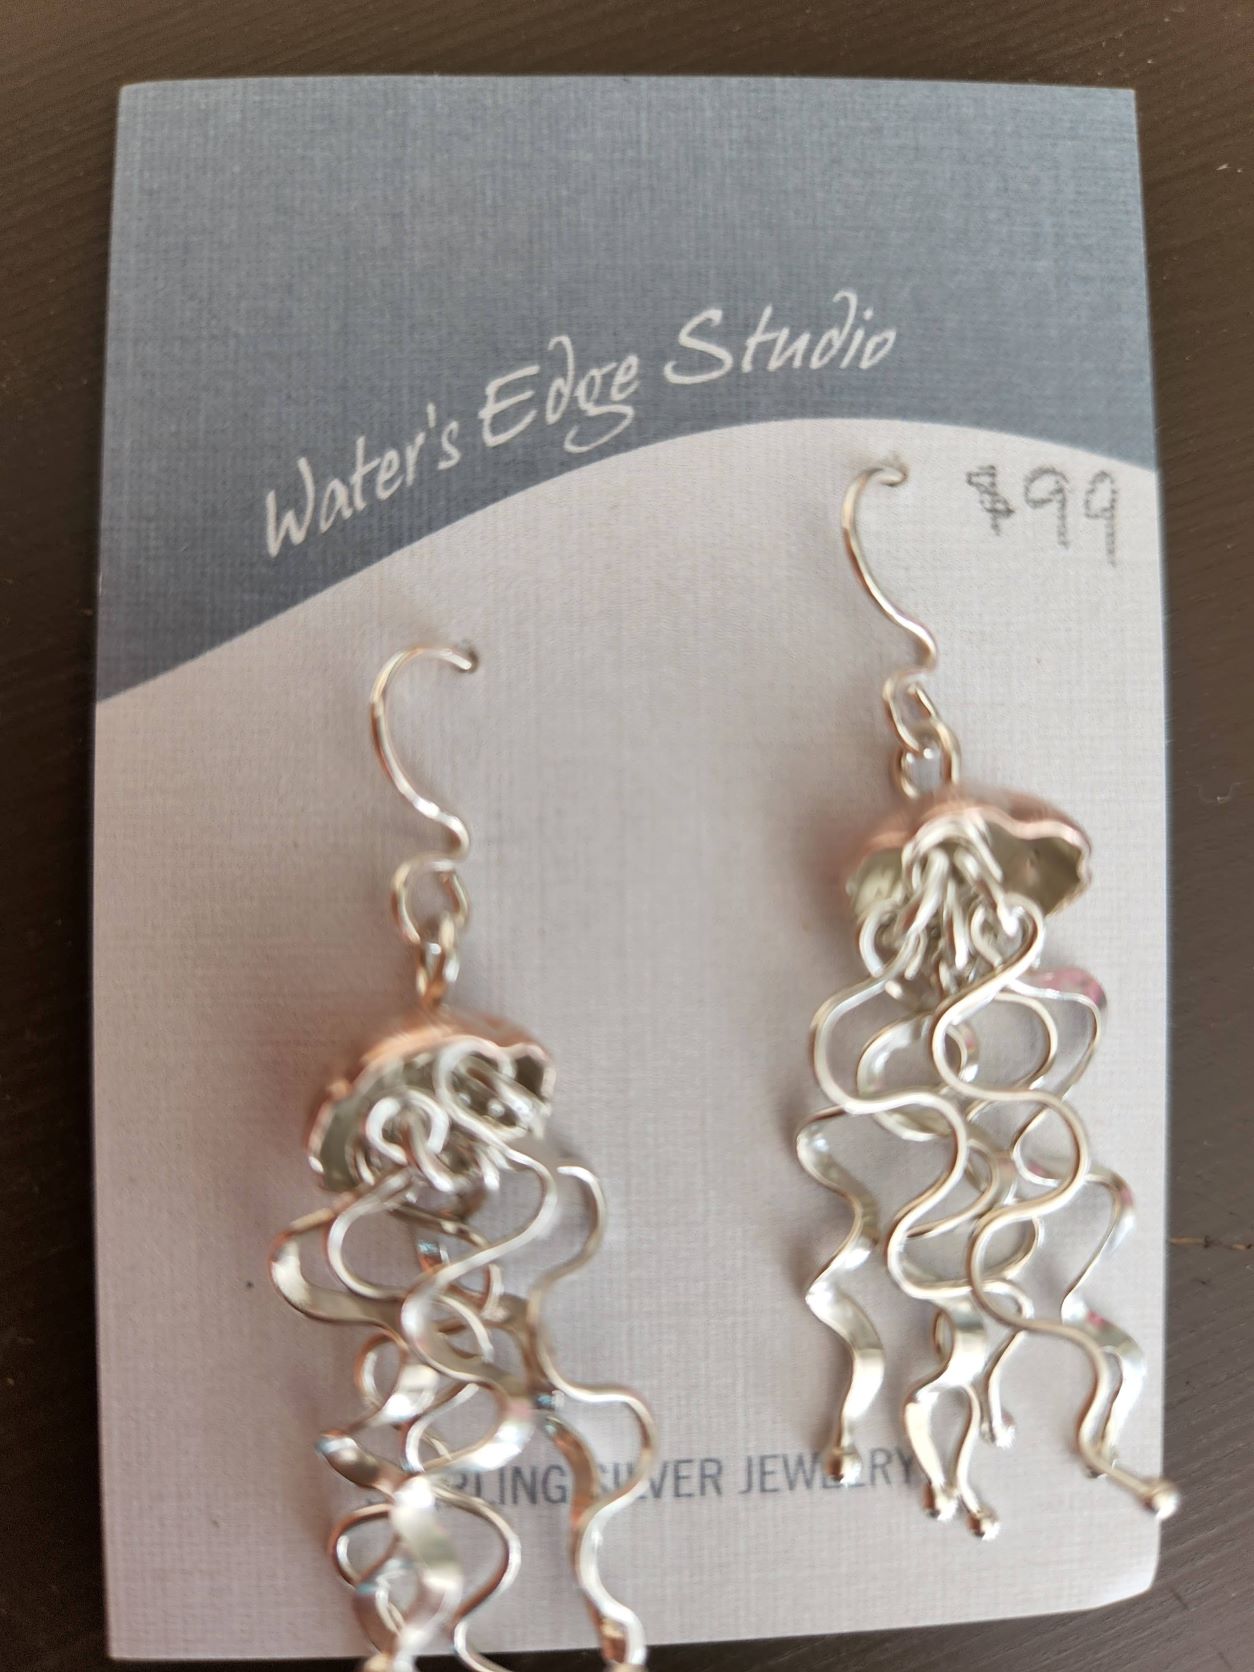 Sterling Silver Earrings by Water's Edge Studio